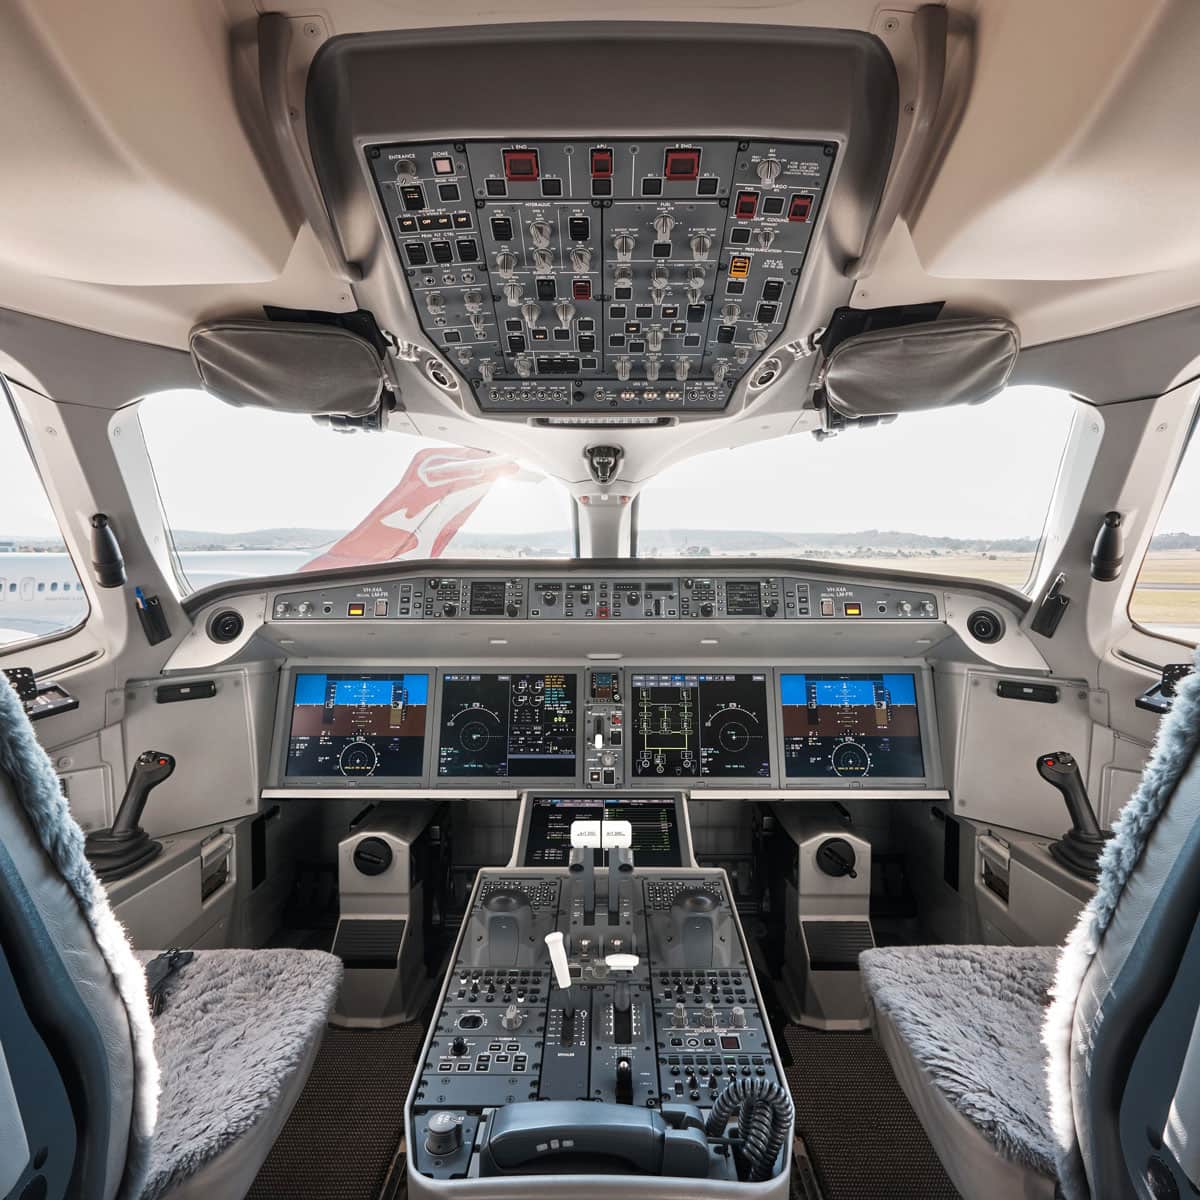 qantas-a220-flight-deck